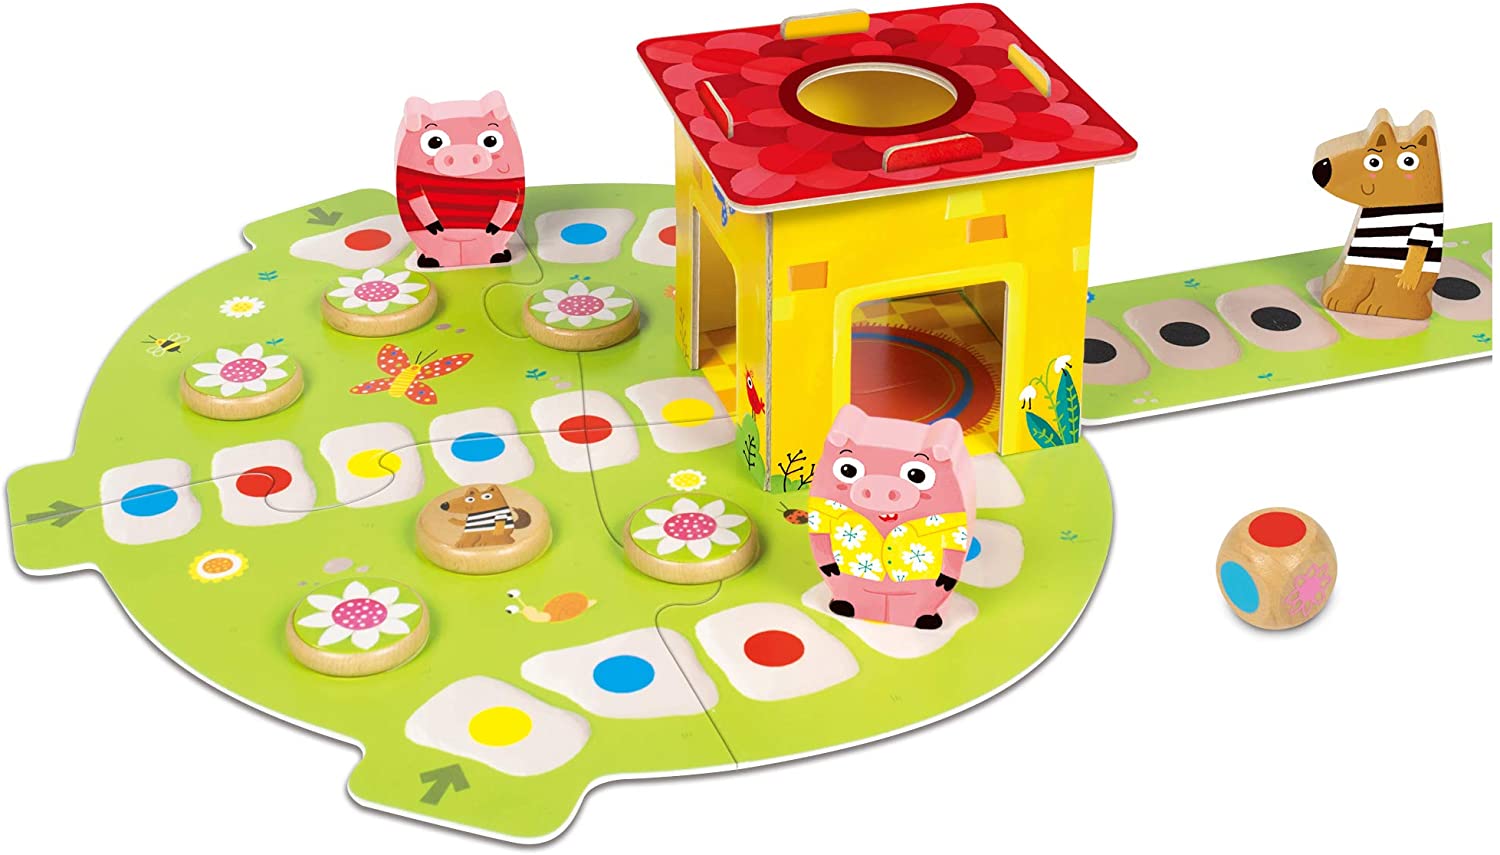 Banco Carrefour lança jogo de tabuleiro interativo para Dia das Crianças